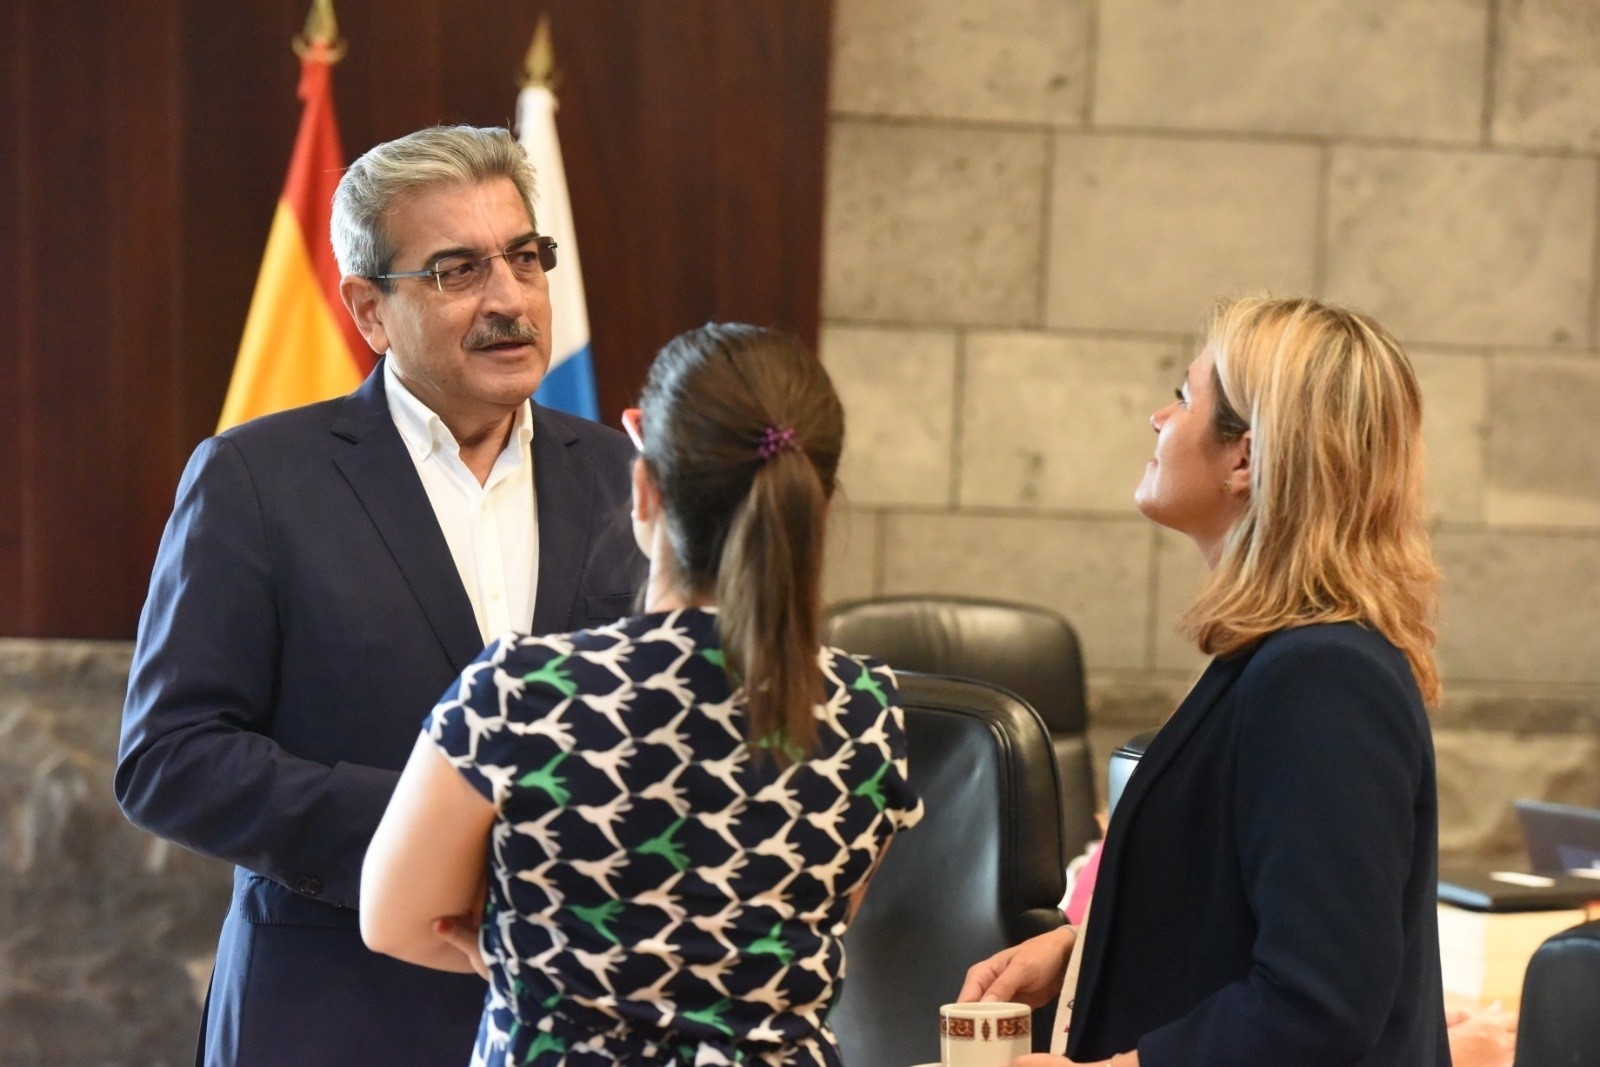 El vicepresidente y consejero de Hacienda del Gobierno de Canarias, Román Rodríguez, cree que la solución judicial es “poco eficaz desde la inmediatez”. EP